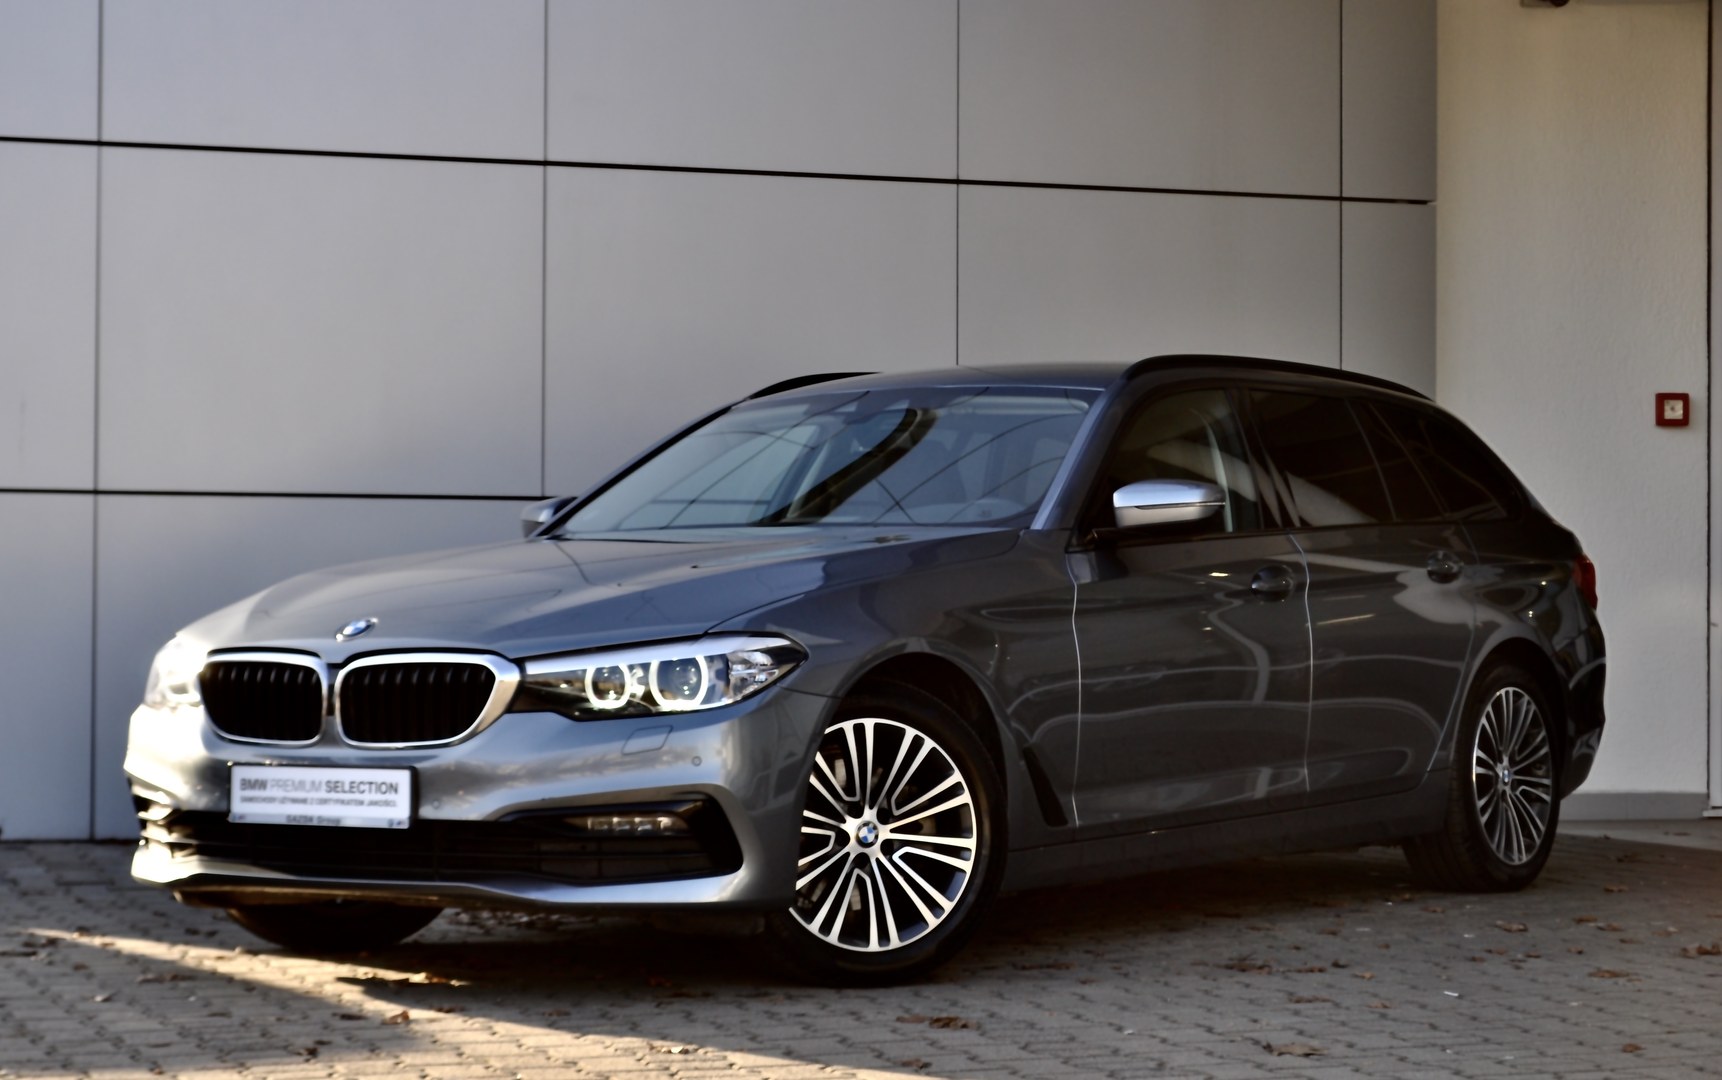 BMW Serii 5 Touring Jasnoszary Autoryzowany Serwis BMW